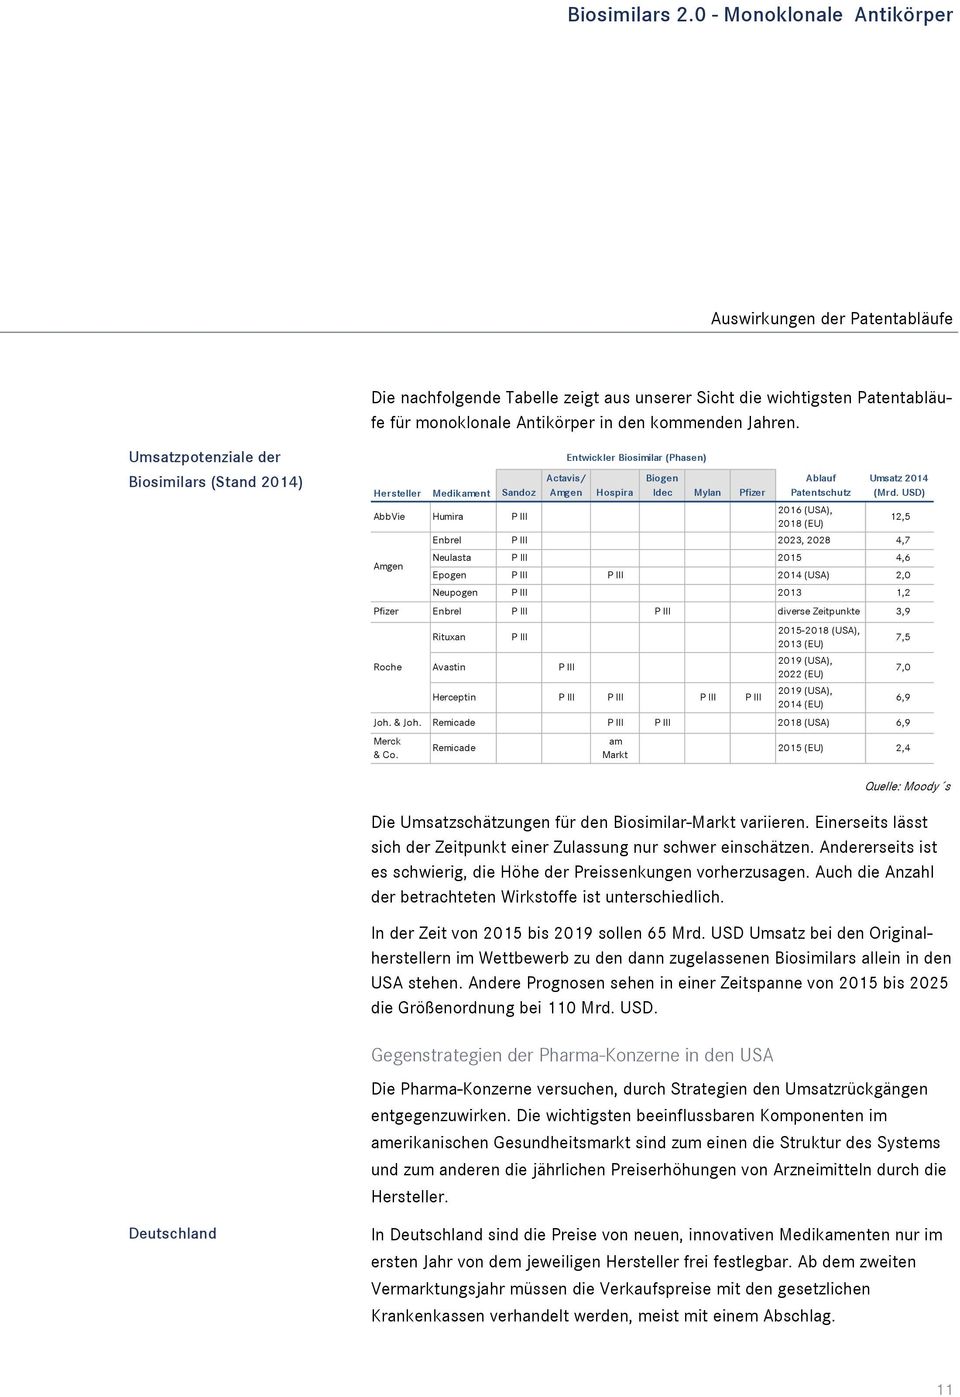 Umsatzpotenziale der Biosimilars (Stand 2014) Hersteller Medikament Sandoz AbbVie Humira P III Actavis/ Amgen Hospira Biogen Idec Mylan Pfizer Ablauf Patentschutz 2016 (USA), 2018 (EU) Umsatz 2014